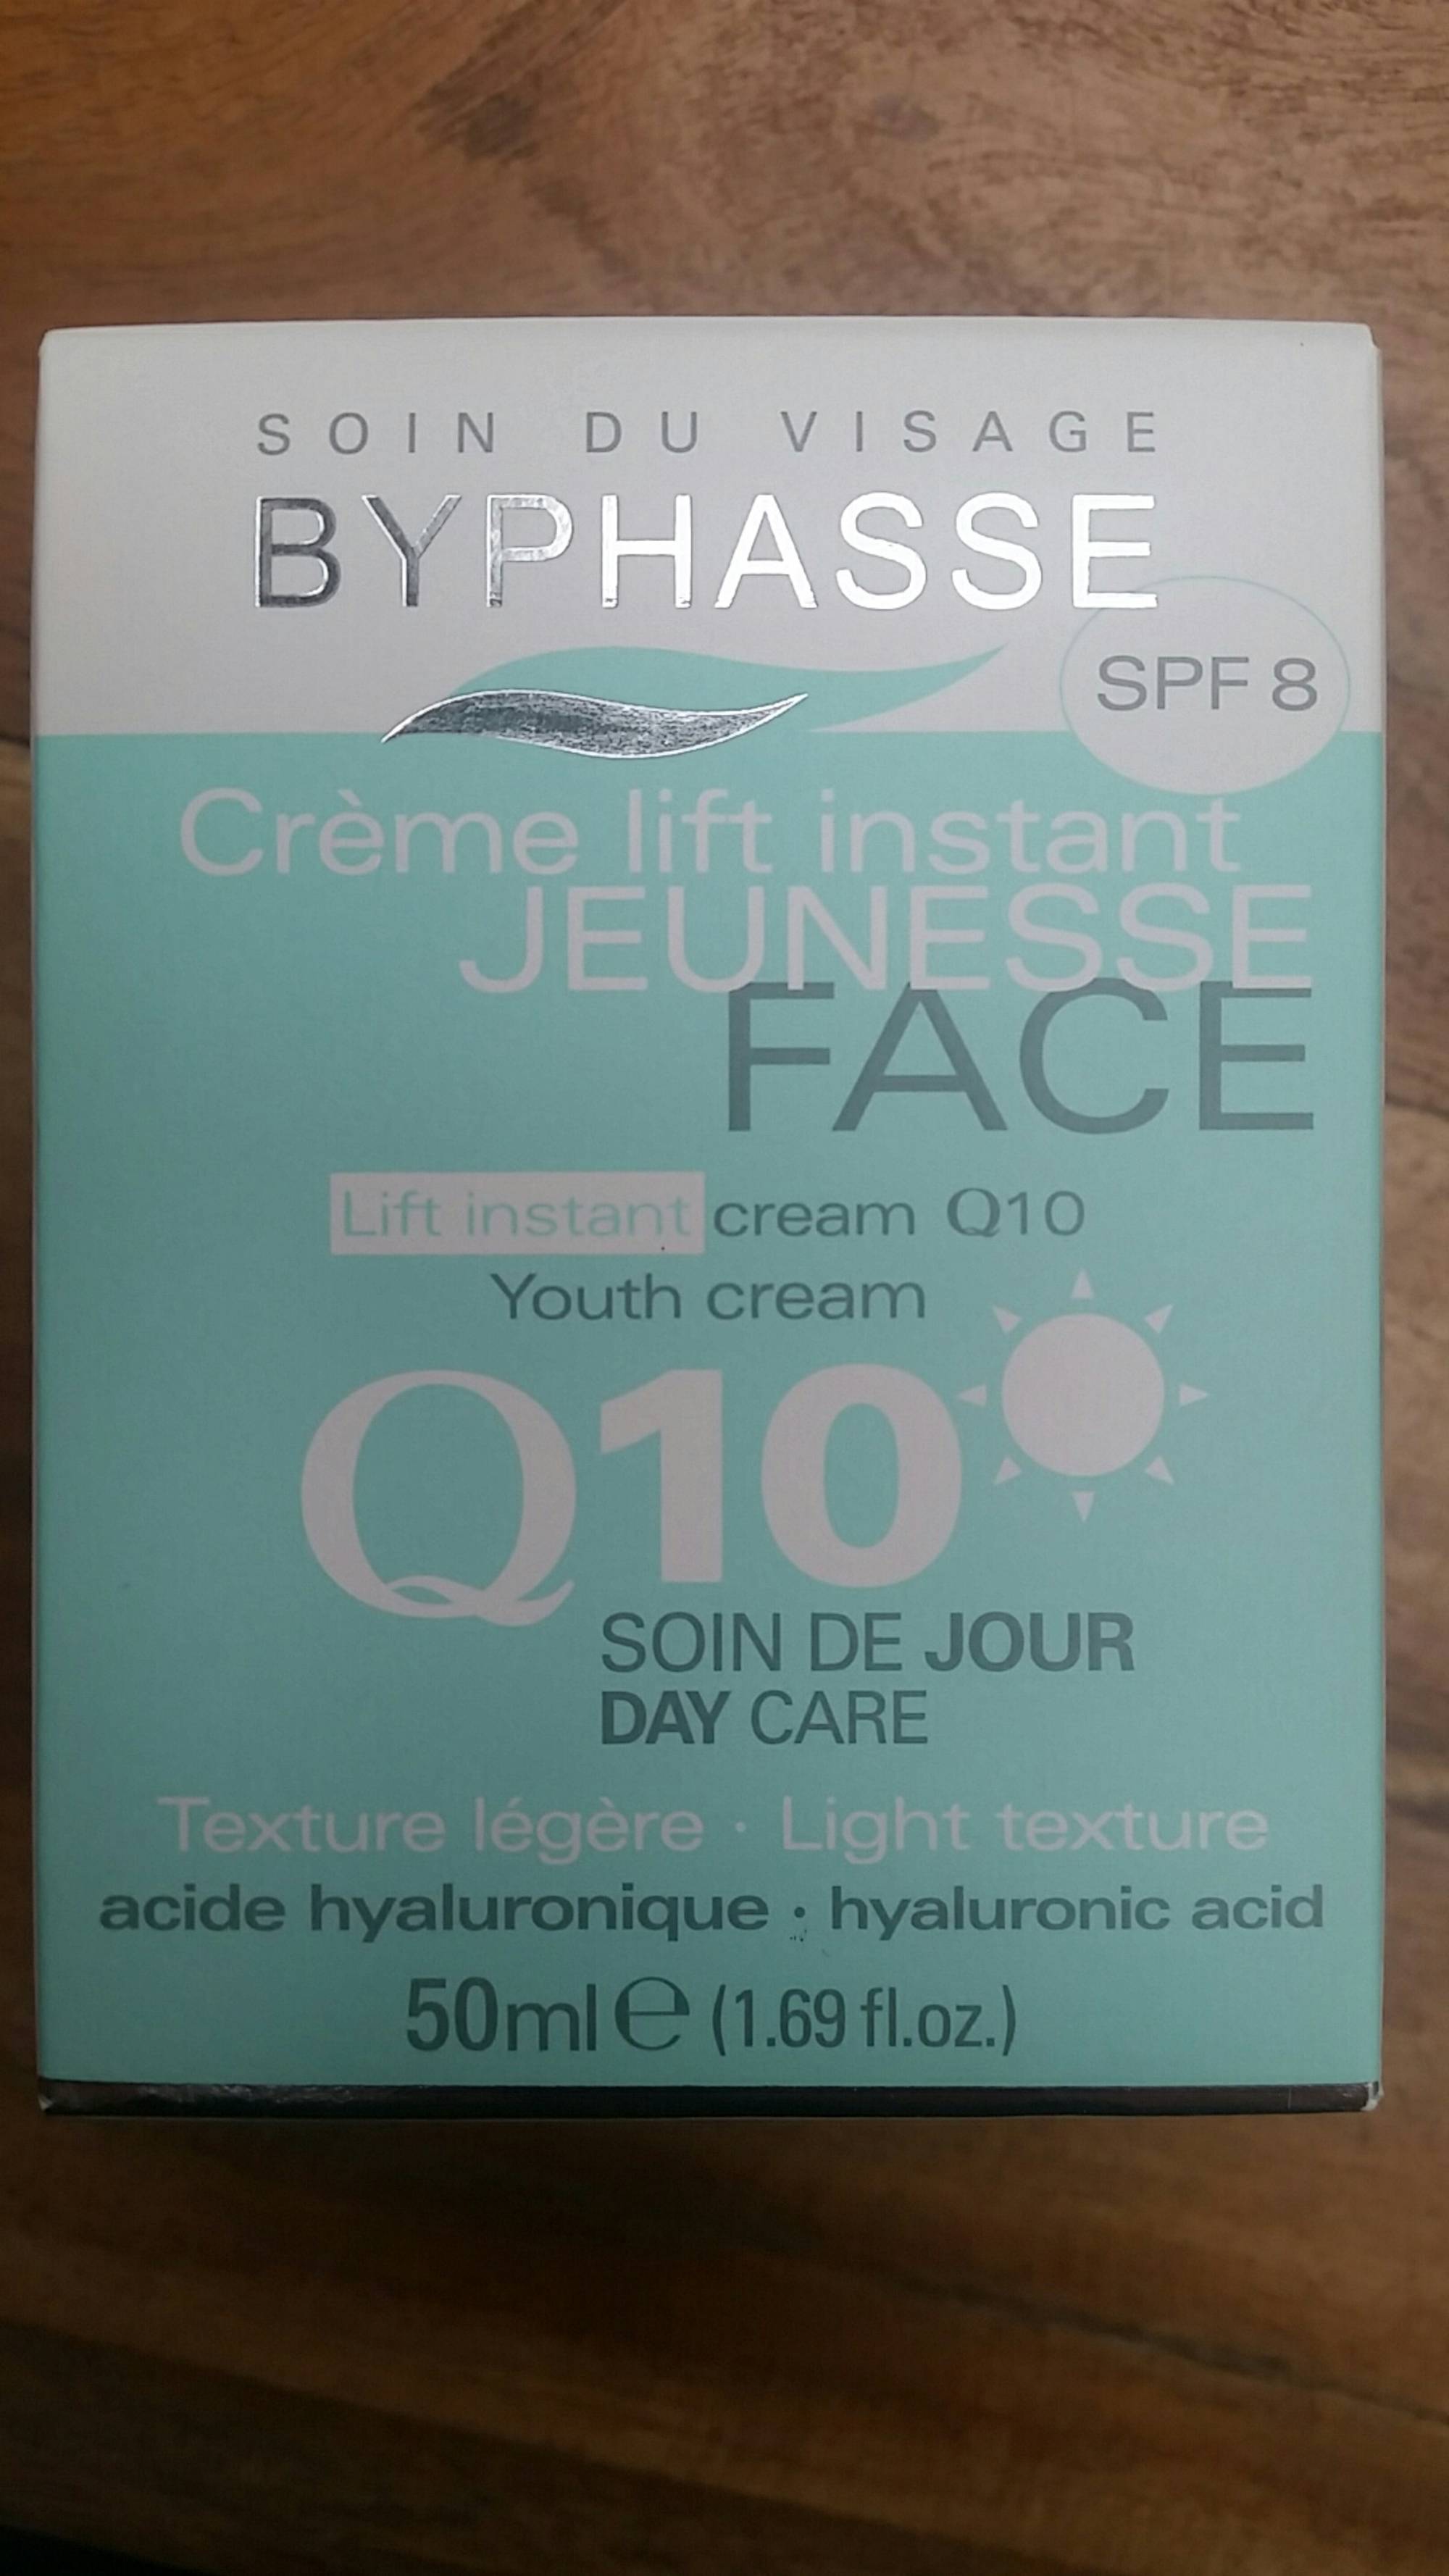 BYPHASSE - Crème visage lift instant jeunesse q10 - soin de jour